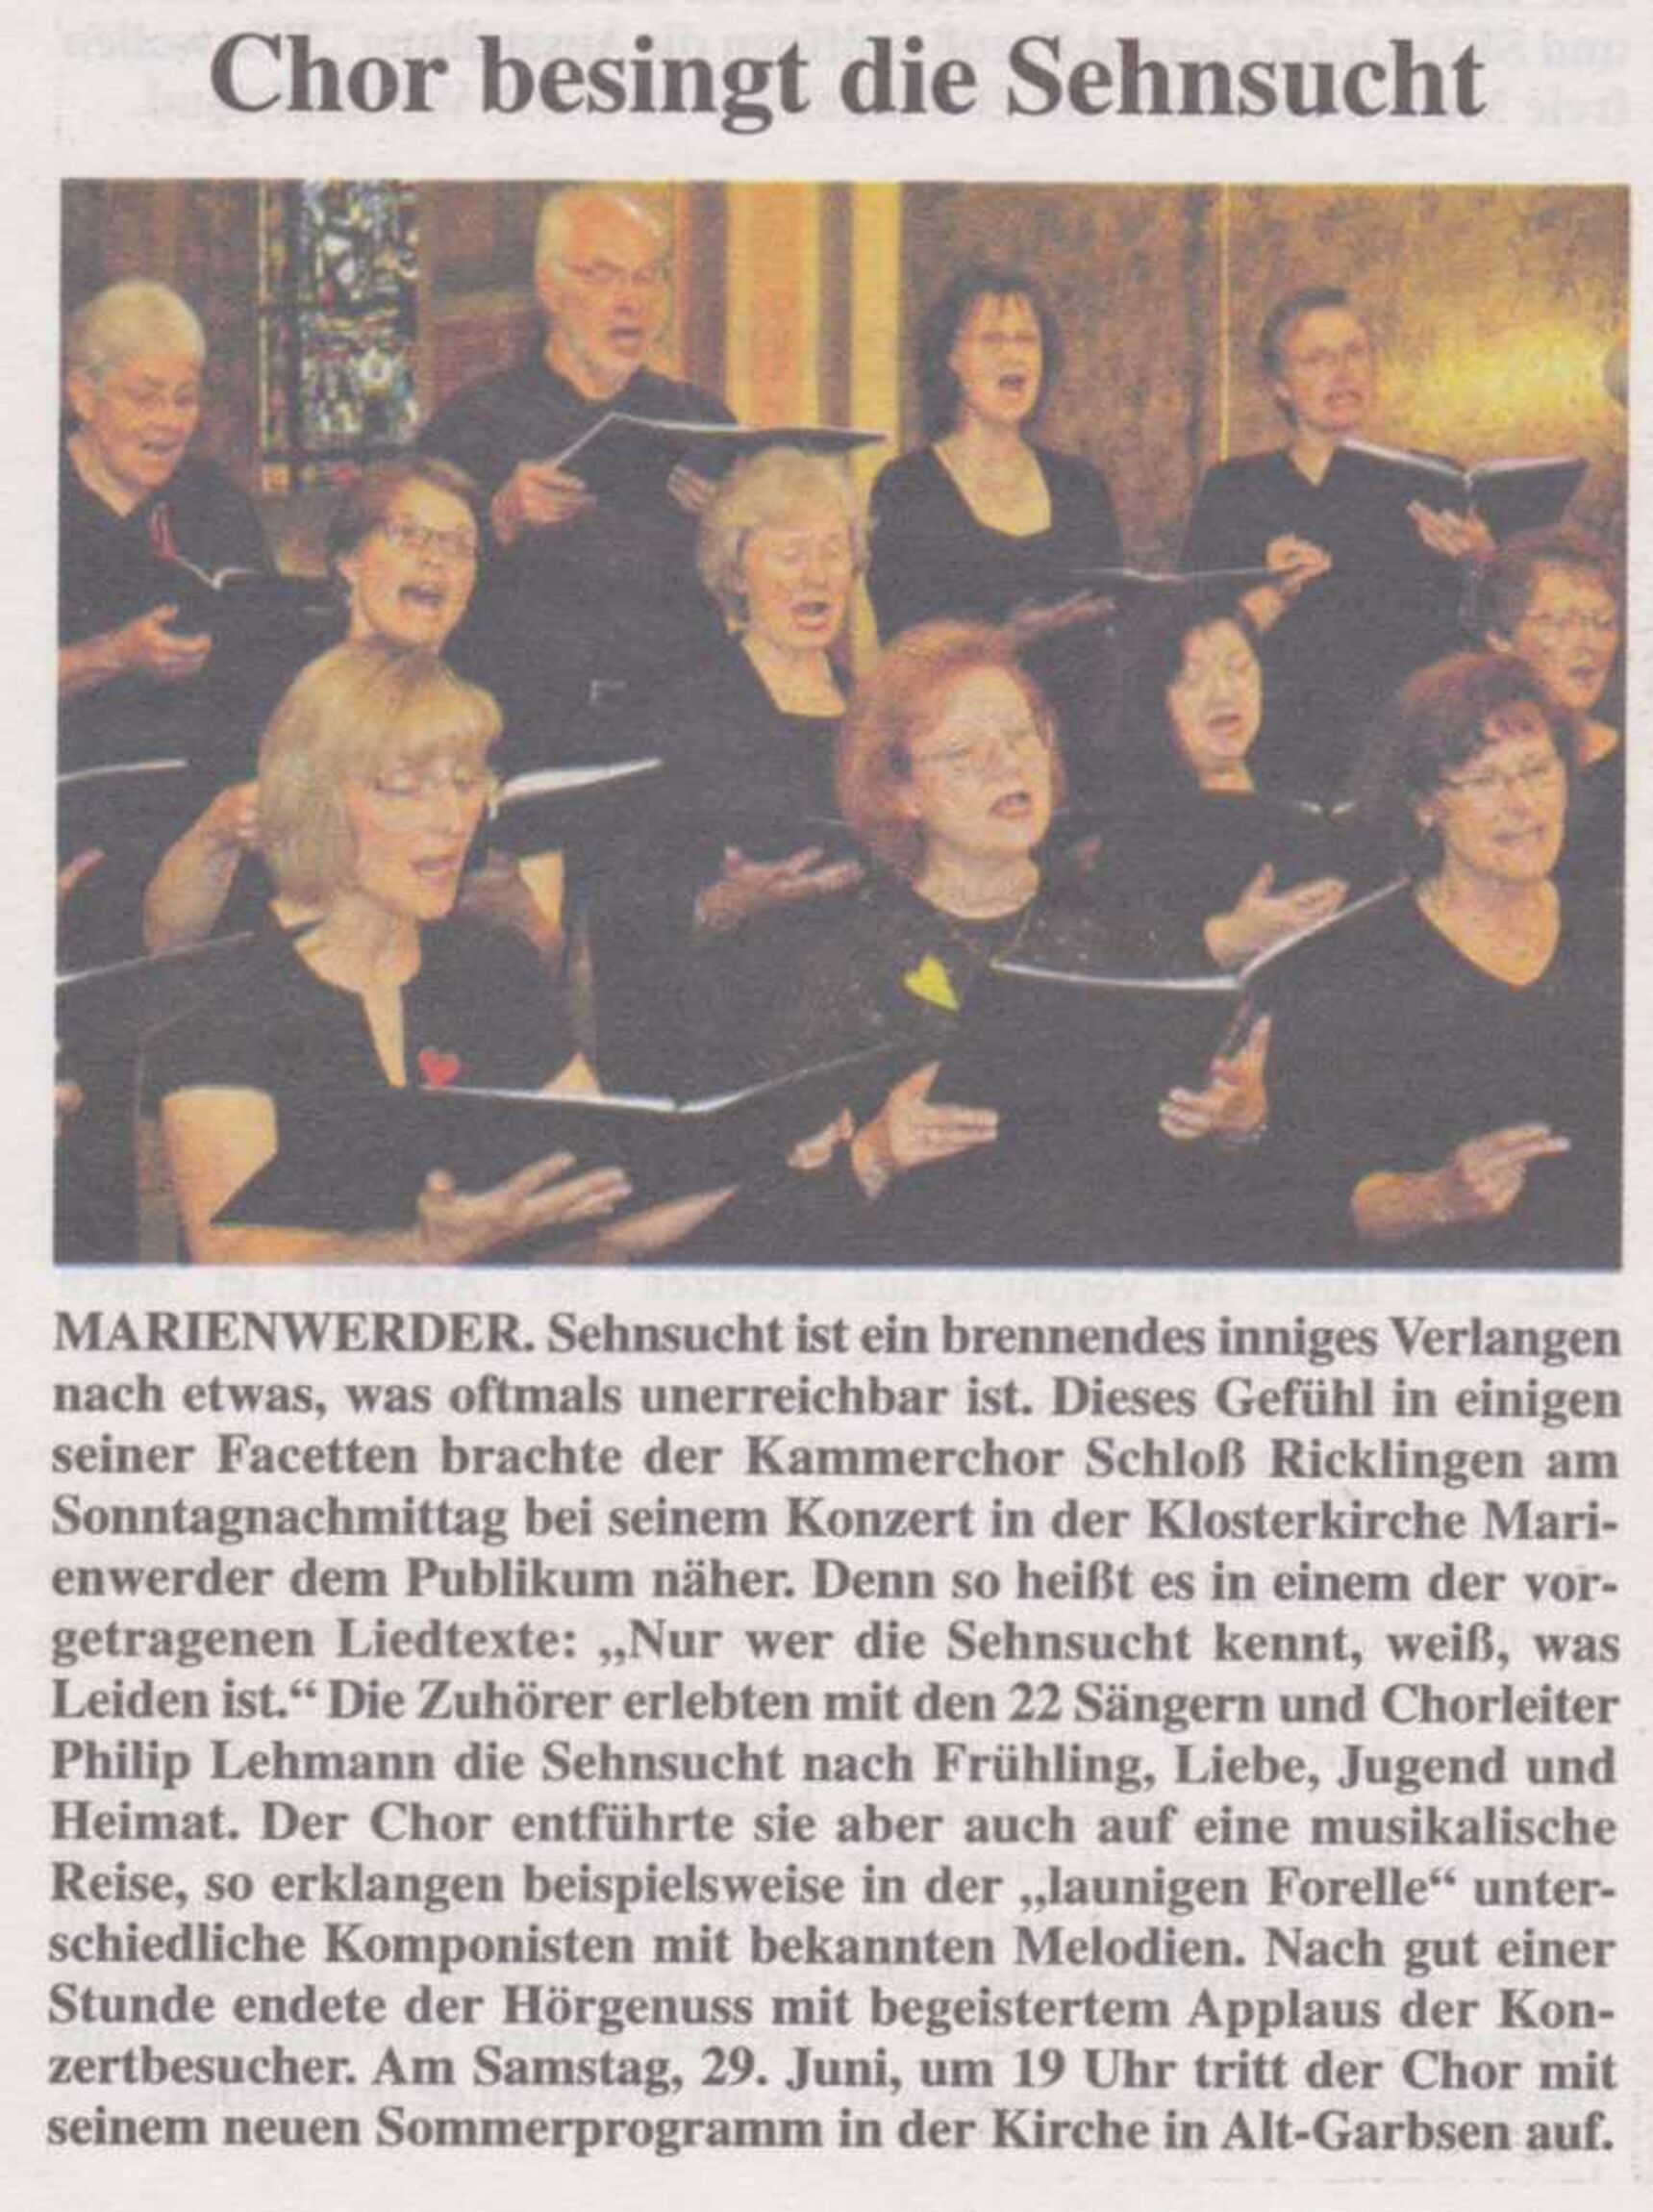 20130623_Kammerchor_Schl_Ricklingen